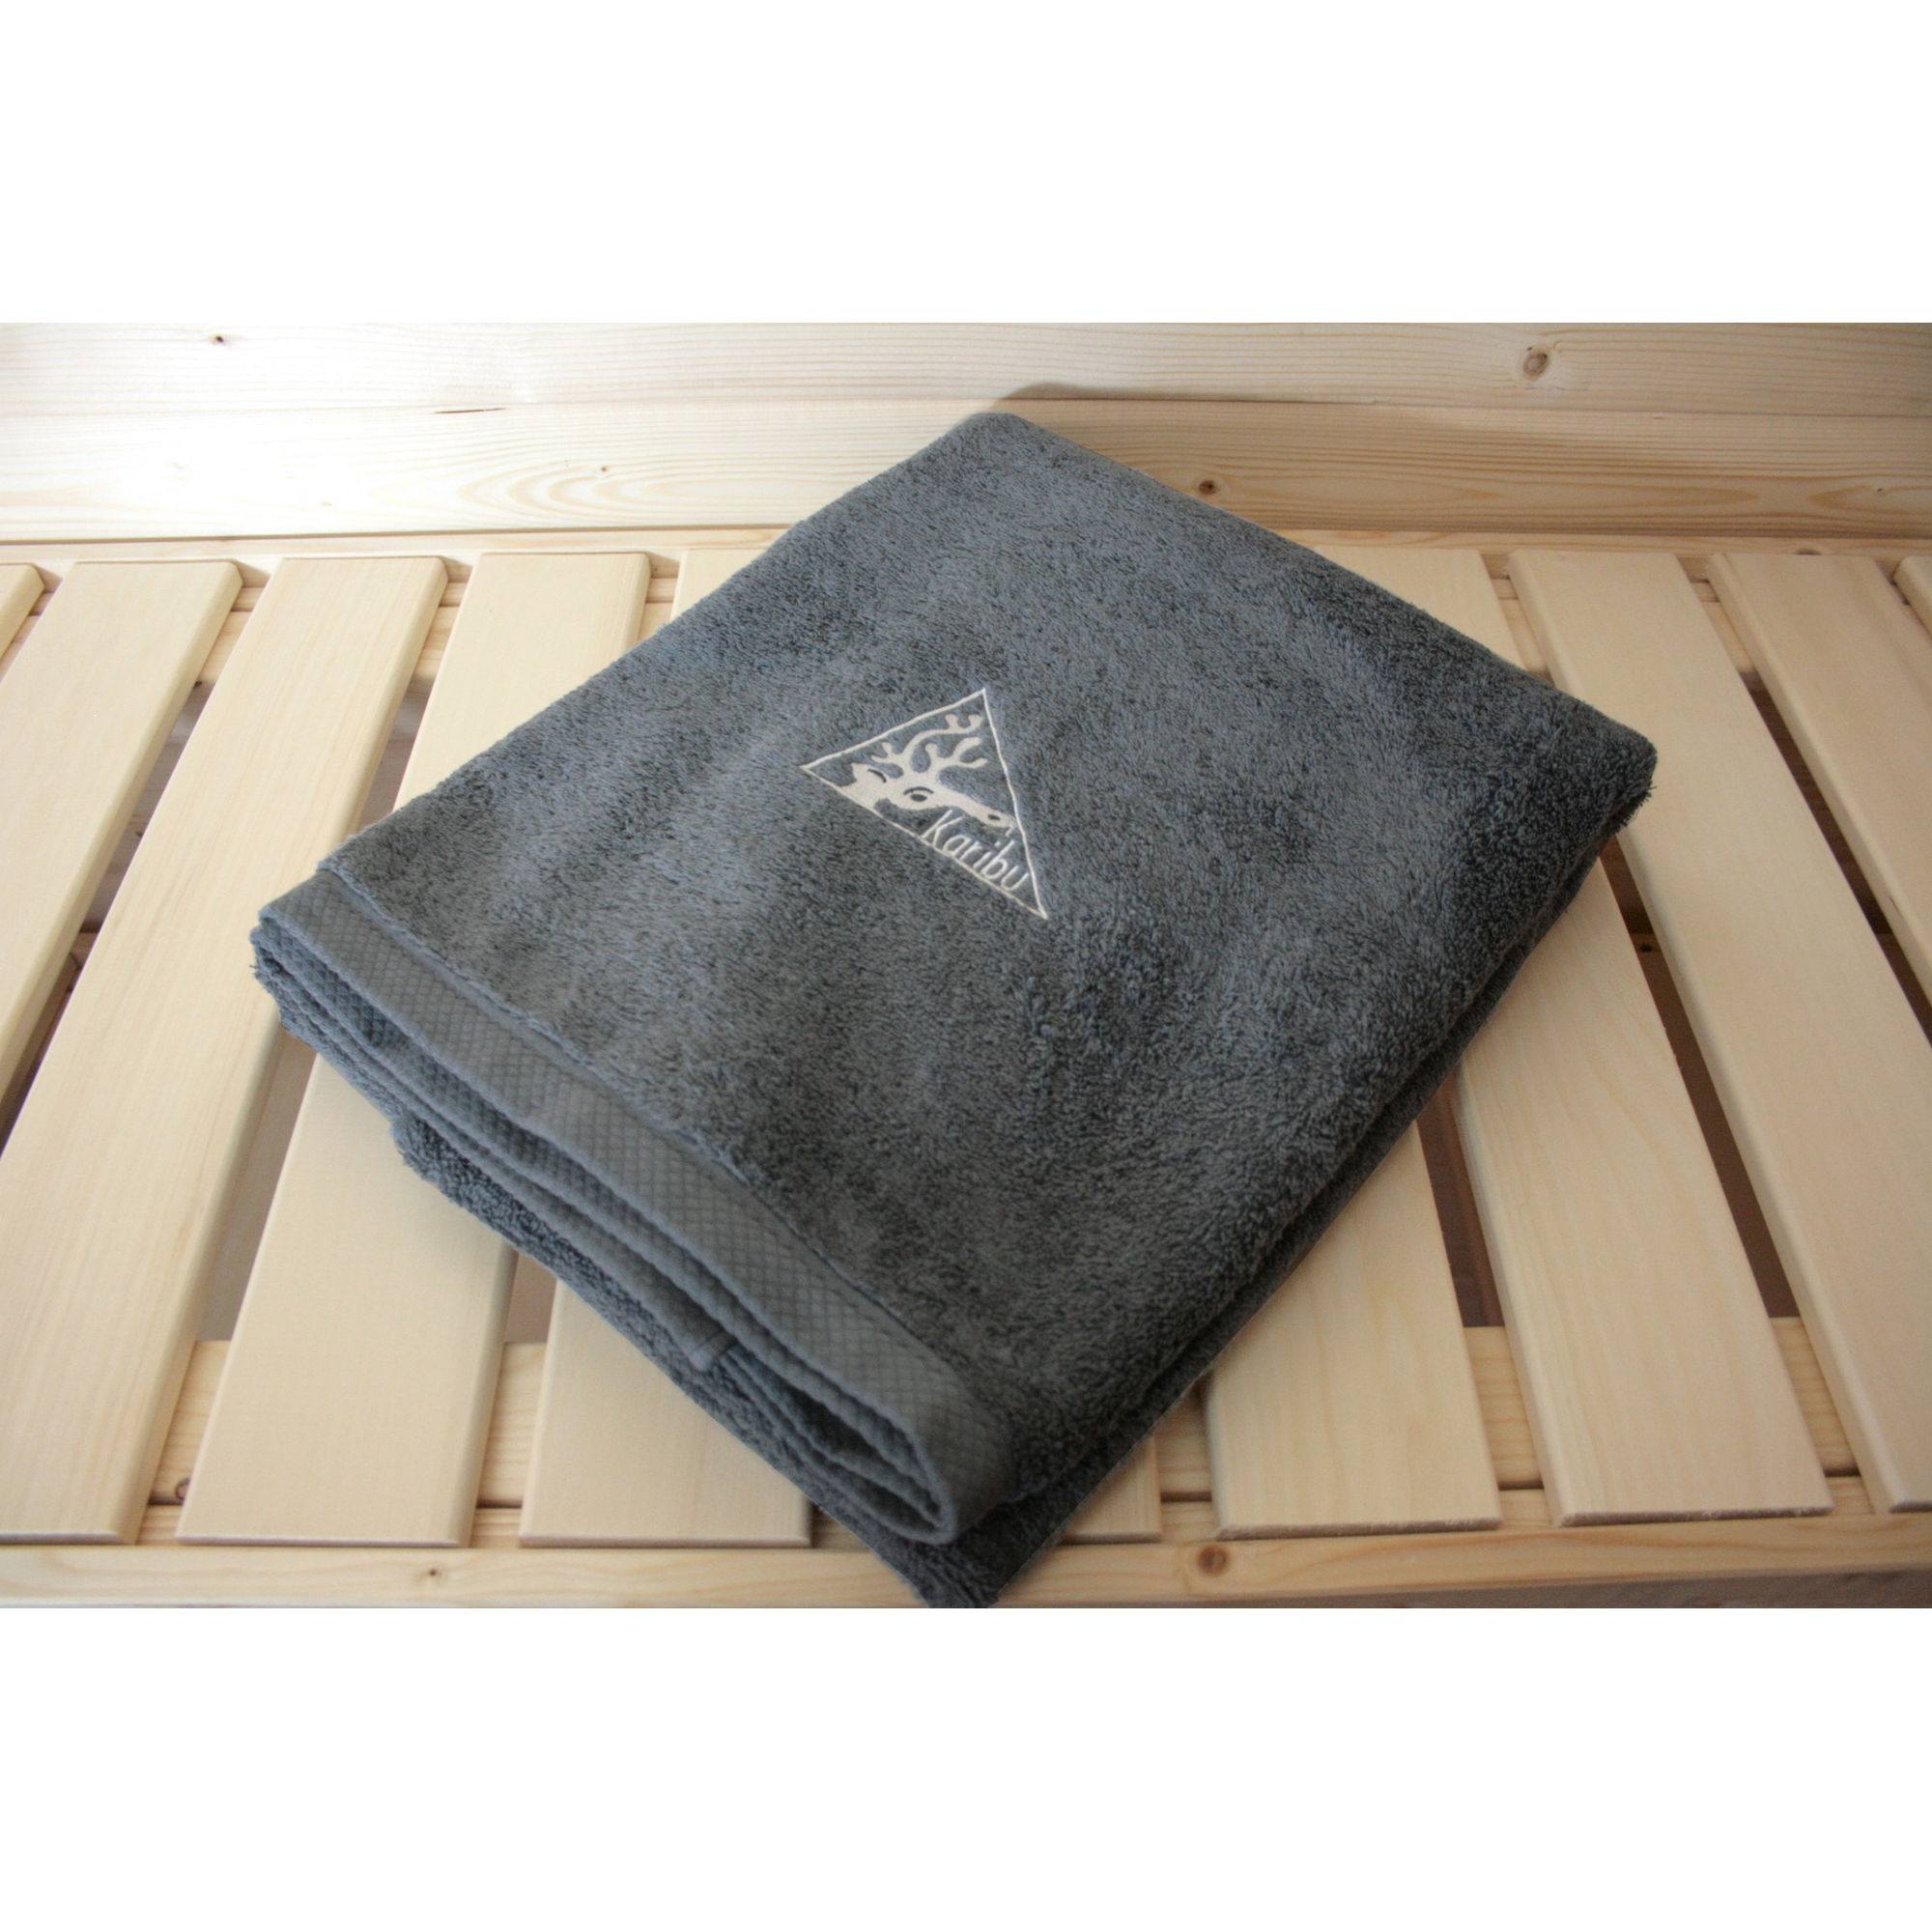 Sauna-Handtuch grau 180 x 90 cm, 2 Stück + product picture